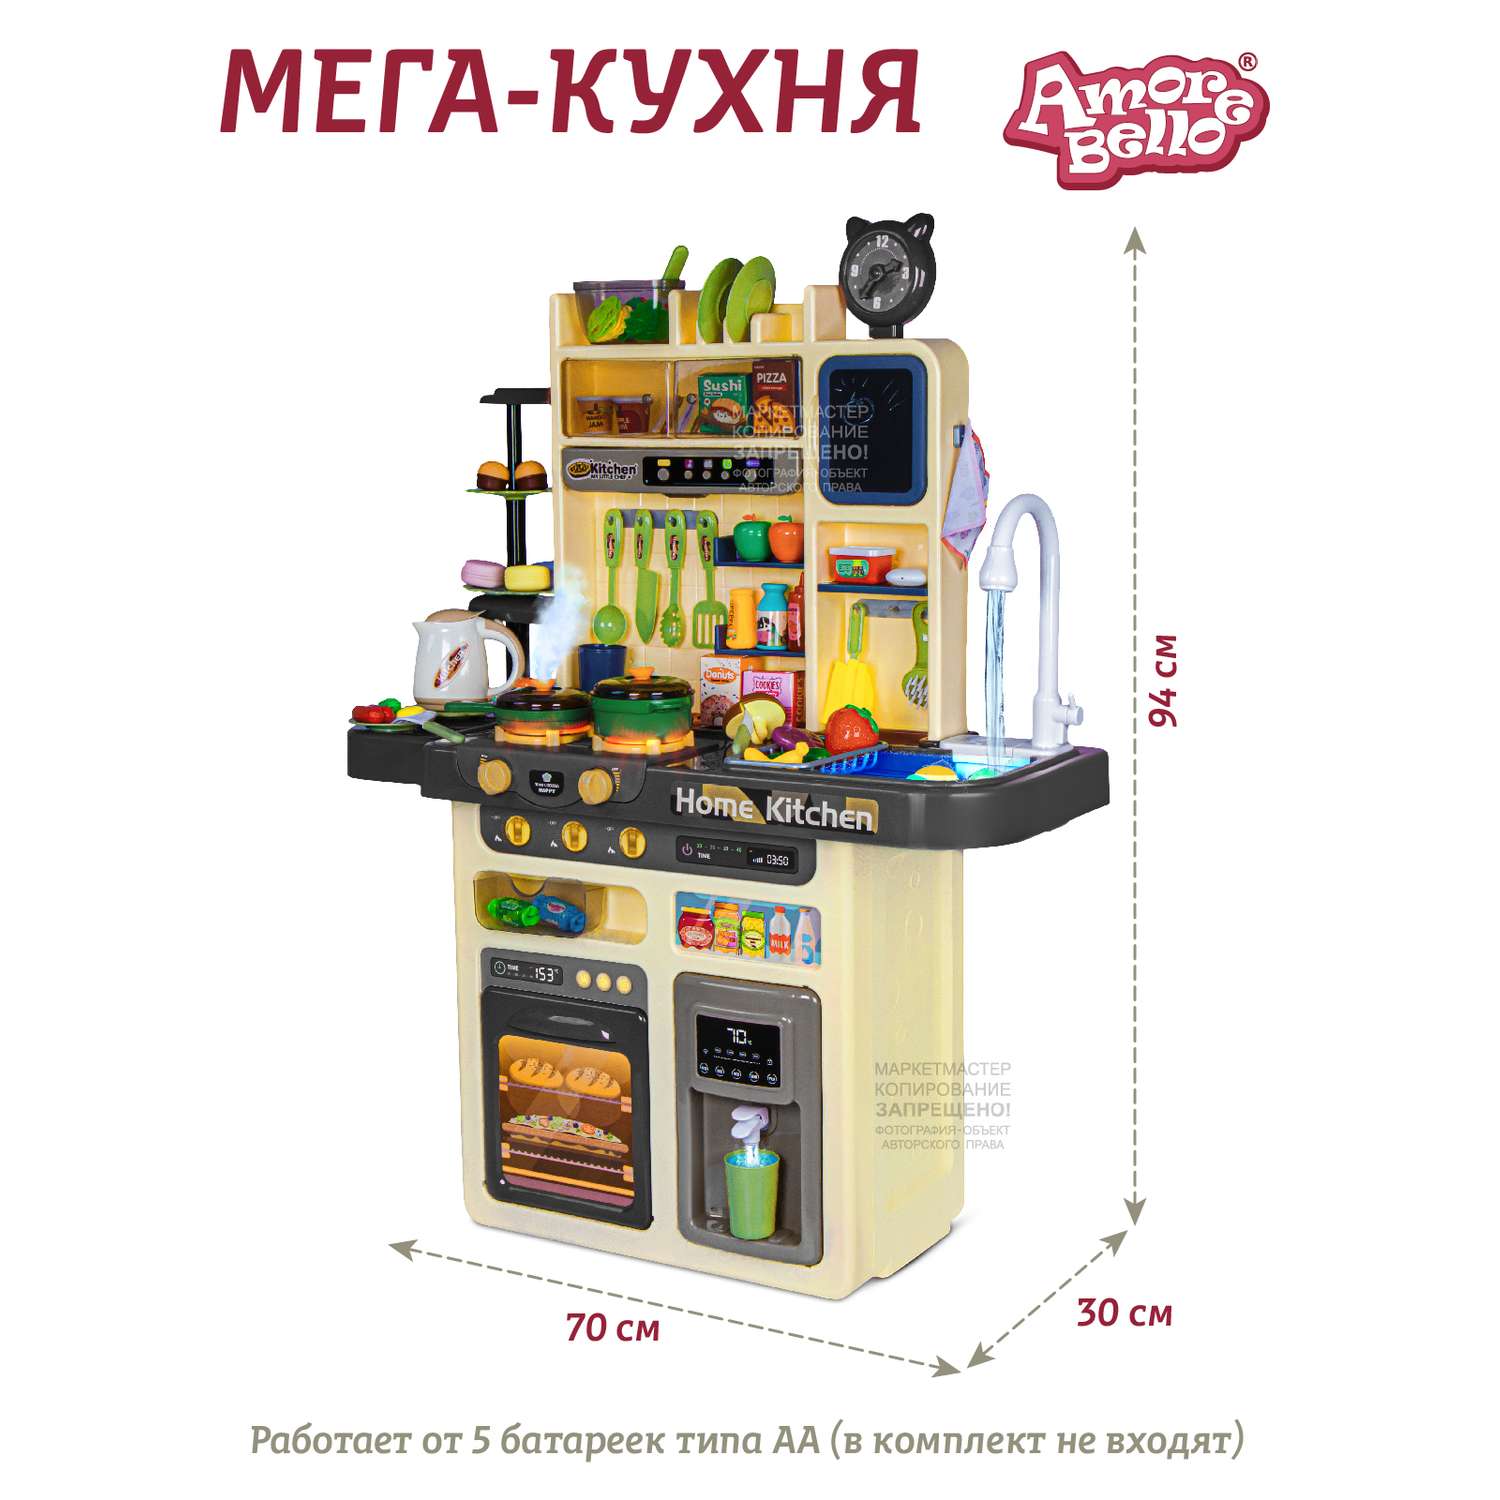 Игровой набор детский AMORE BELLO Кухня со световыми и звуковыми эффектами паром кран-помпа - фото 6